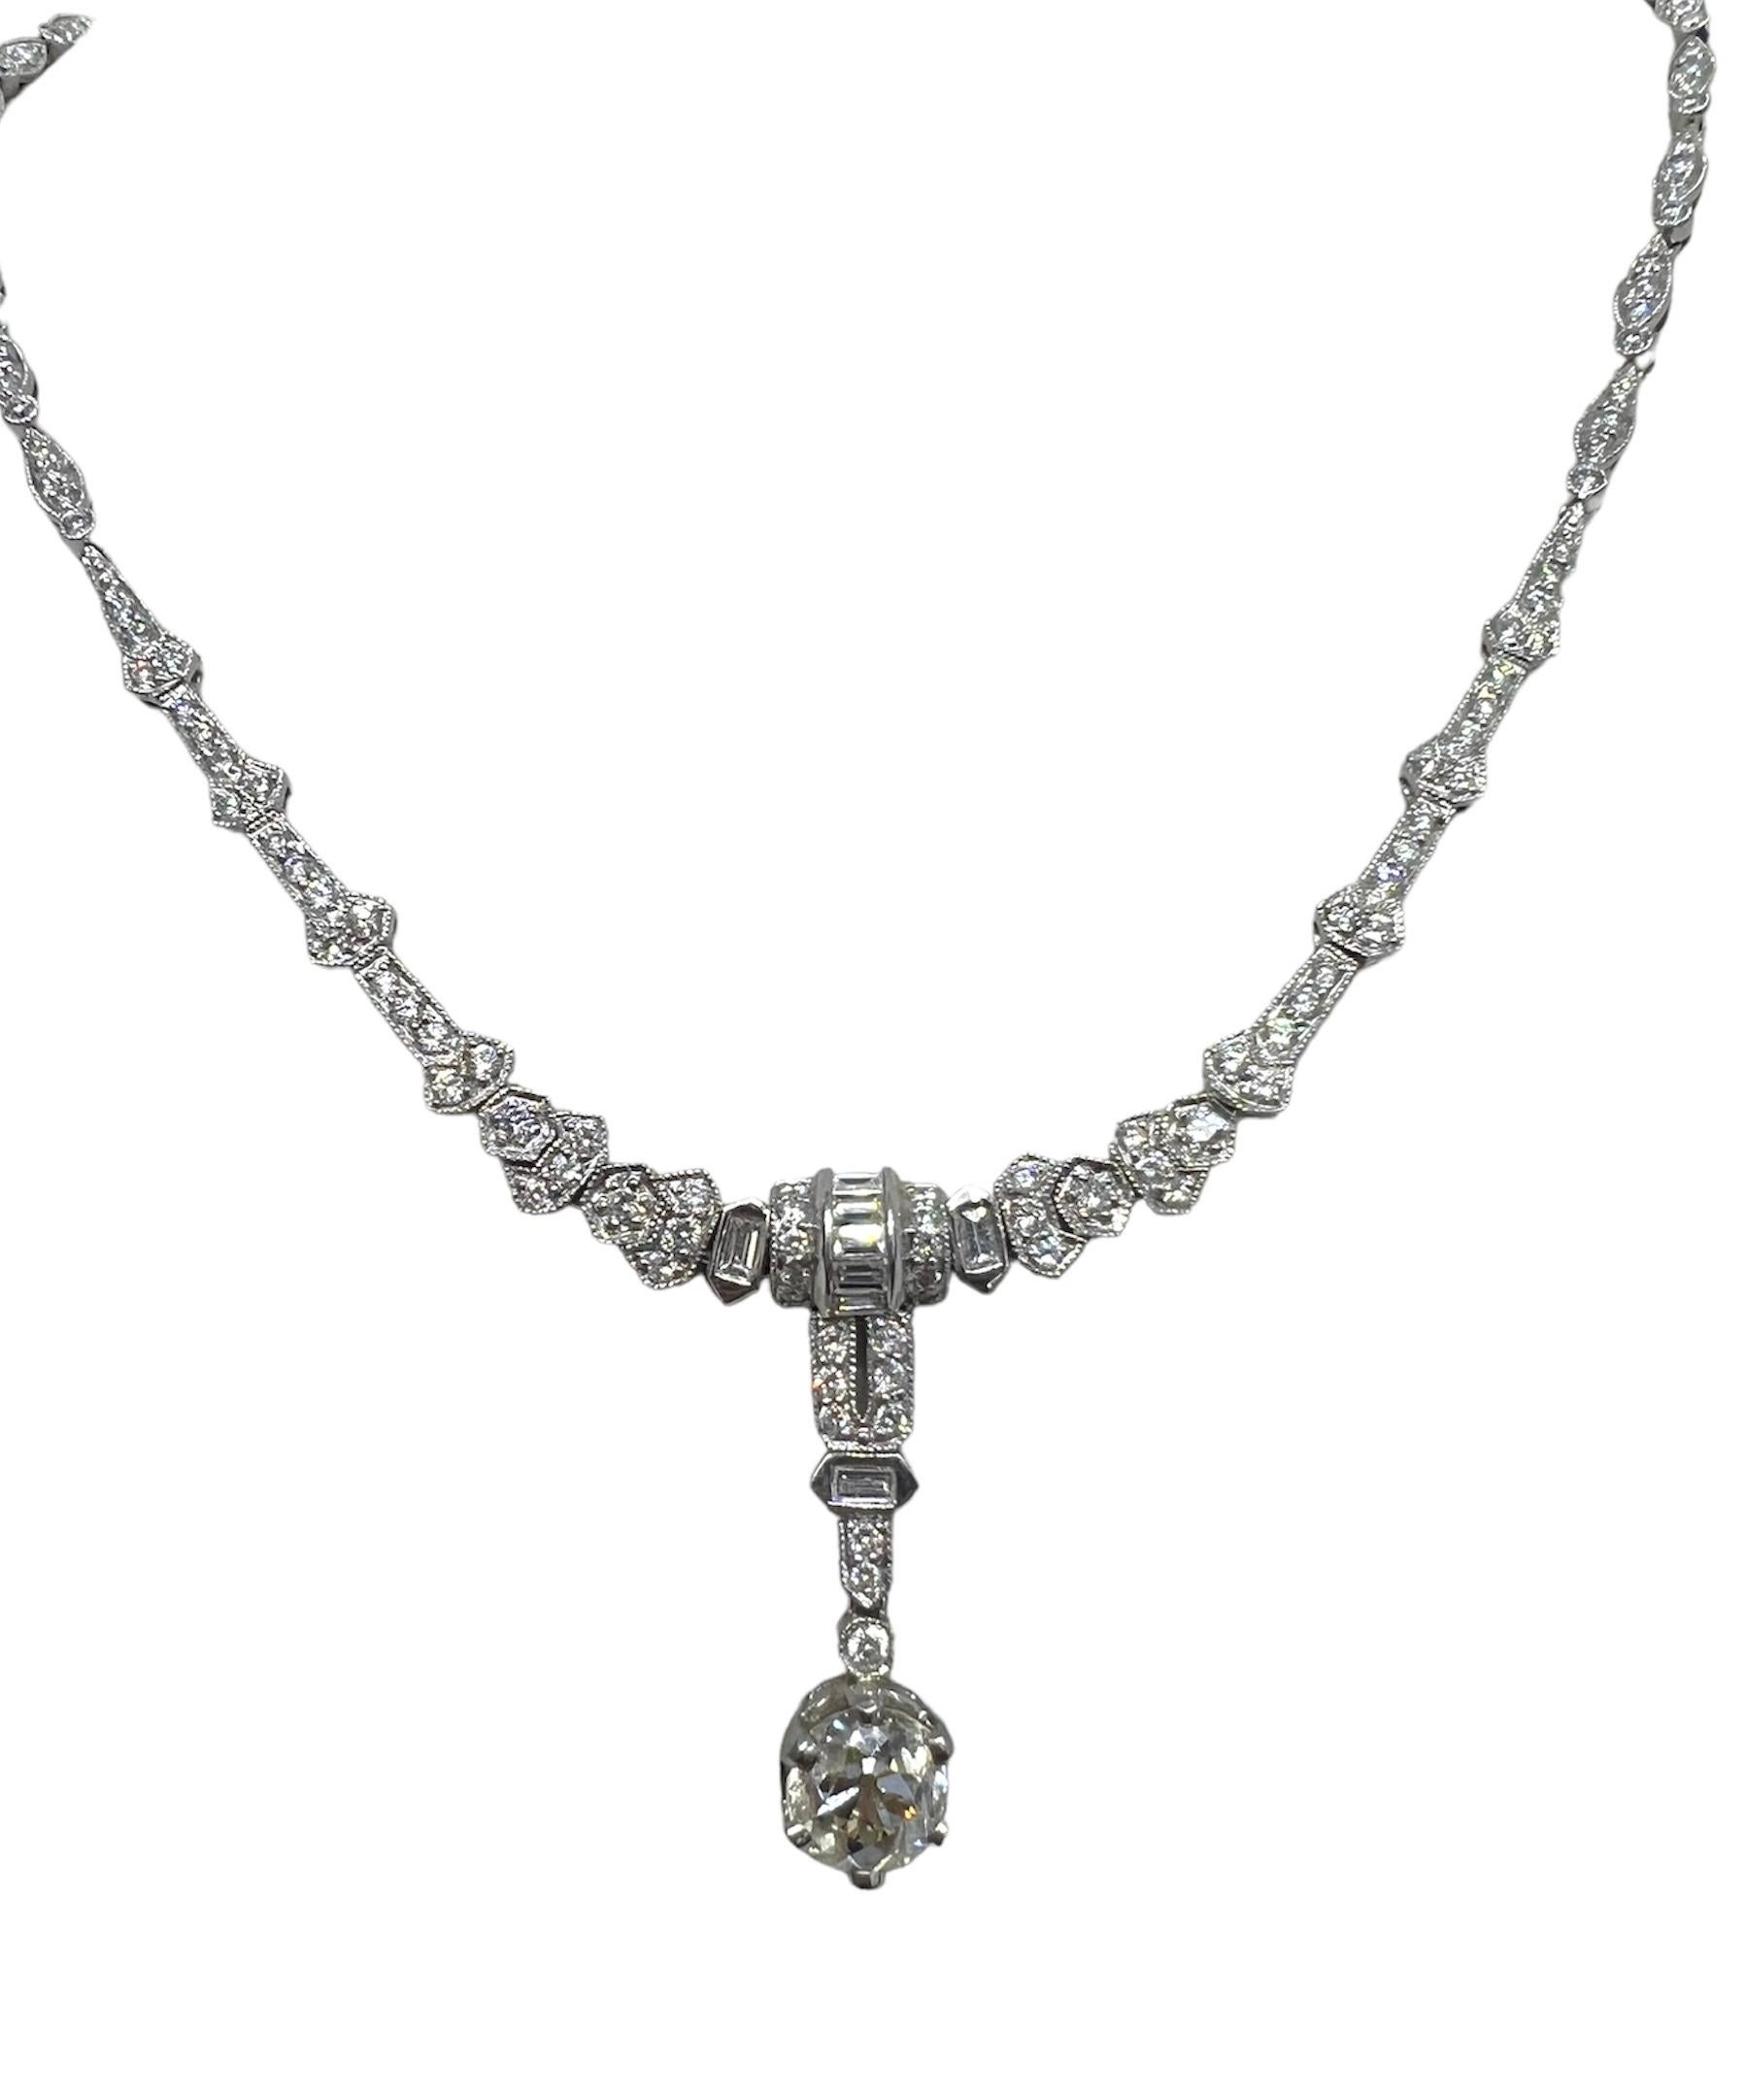 Platin-Halskette mit 1,44 Karat rundem Mittelstein-Anhänger und 3,36 Karat Diamanten.

Sophia D von Joseph Dardashti LTD ist seit 35 Jahren weltweit bekannt und lässt sich vom klassischen Art-Déco-Design inspirieren, das mit modernen